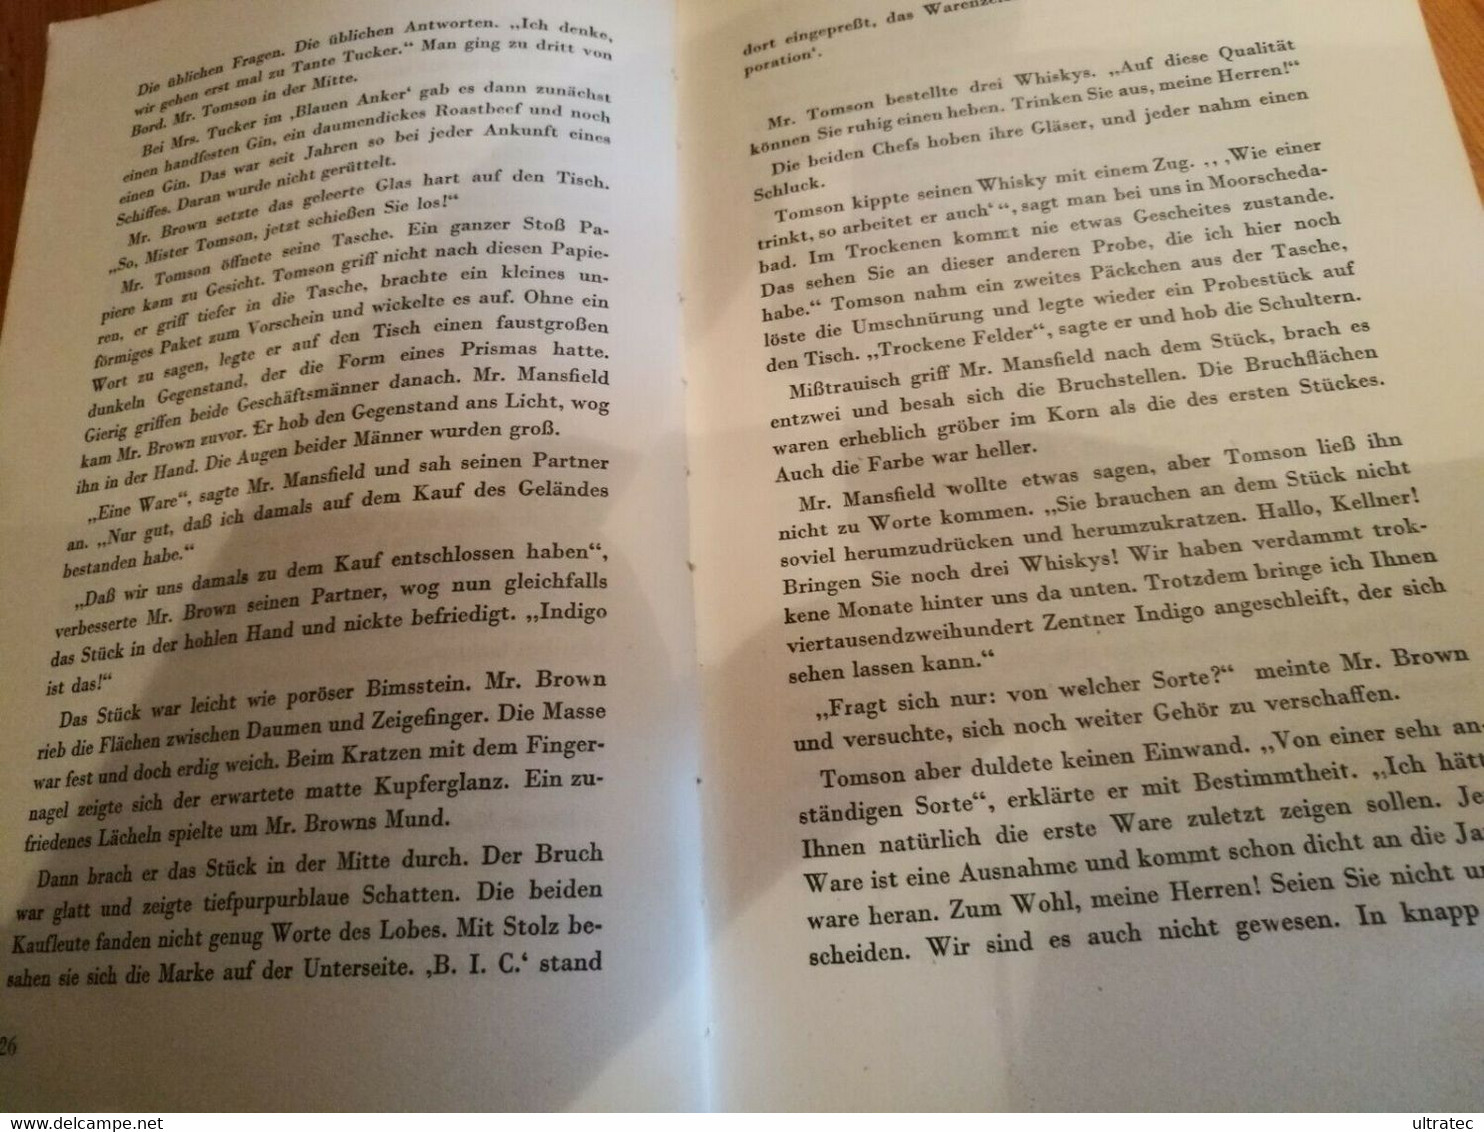 Karl Aloys Schenzinger «Anilin» Buch 1937 NS Propaganda Buch Gebunden - 5. Zeit Der Weltkriege